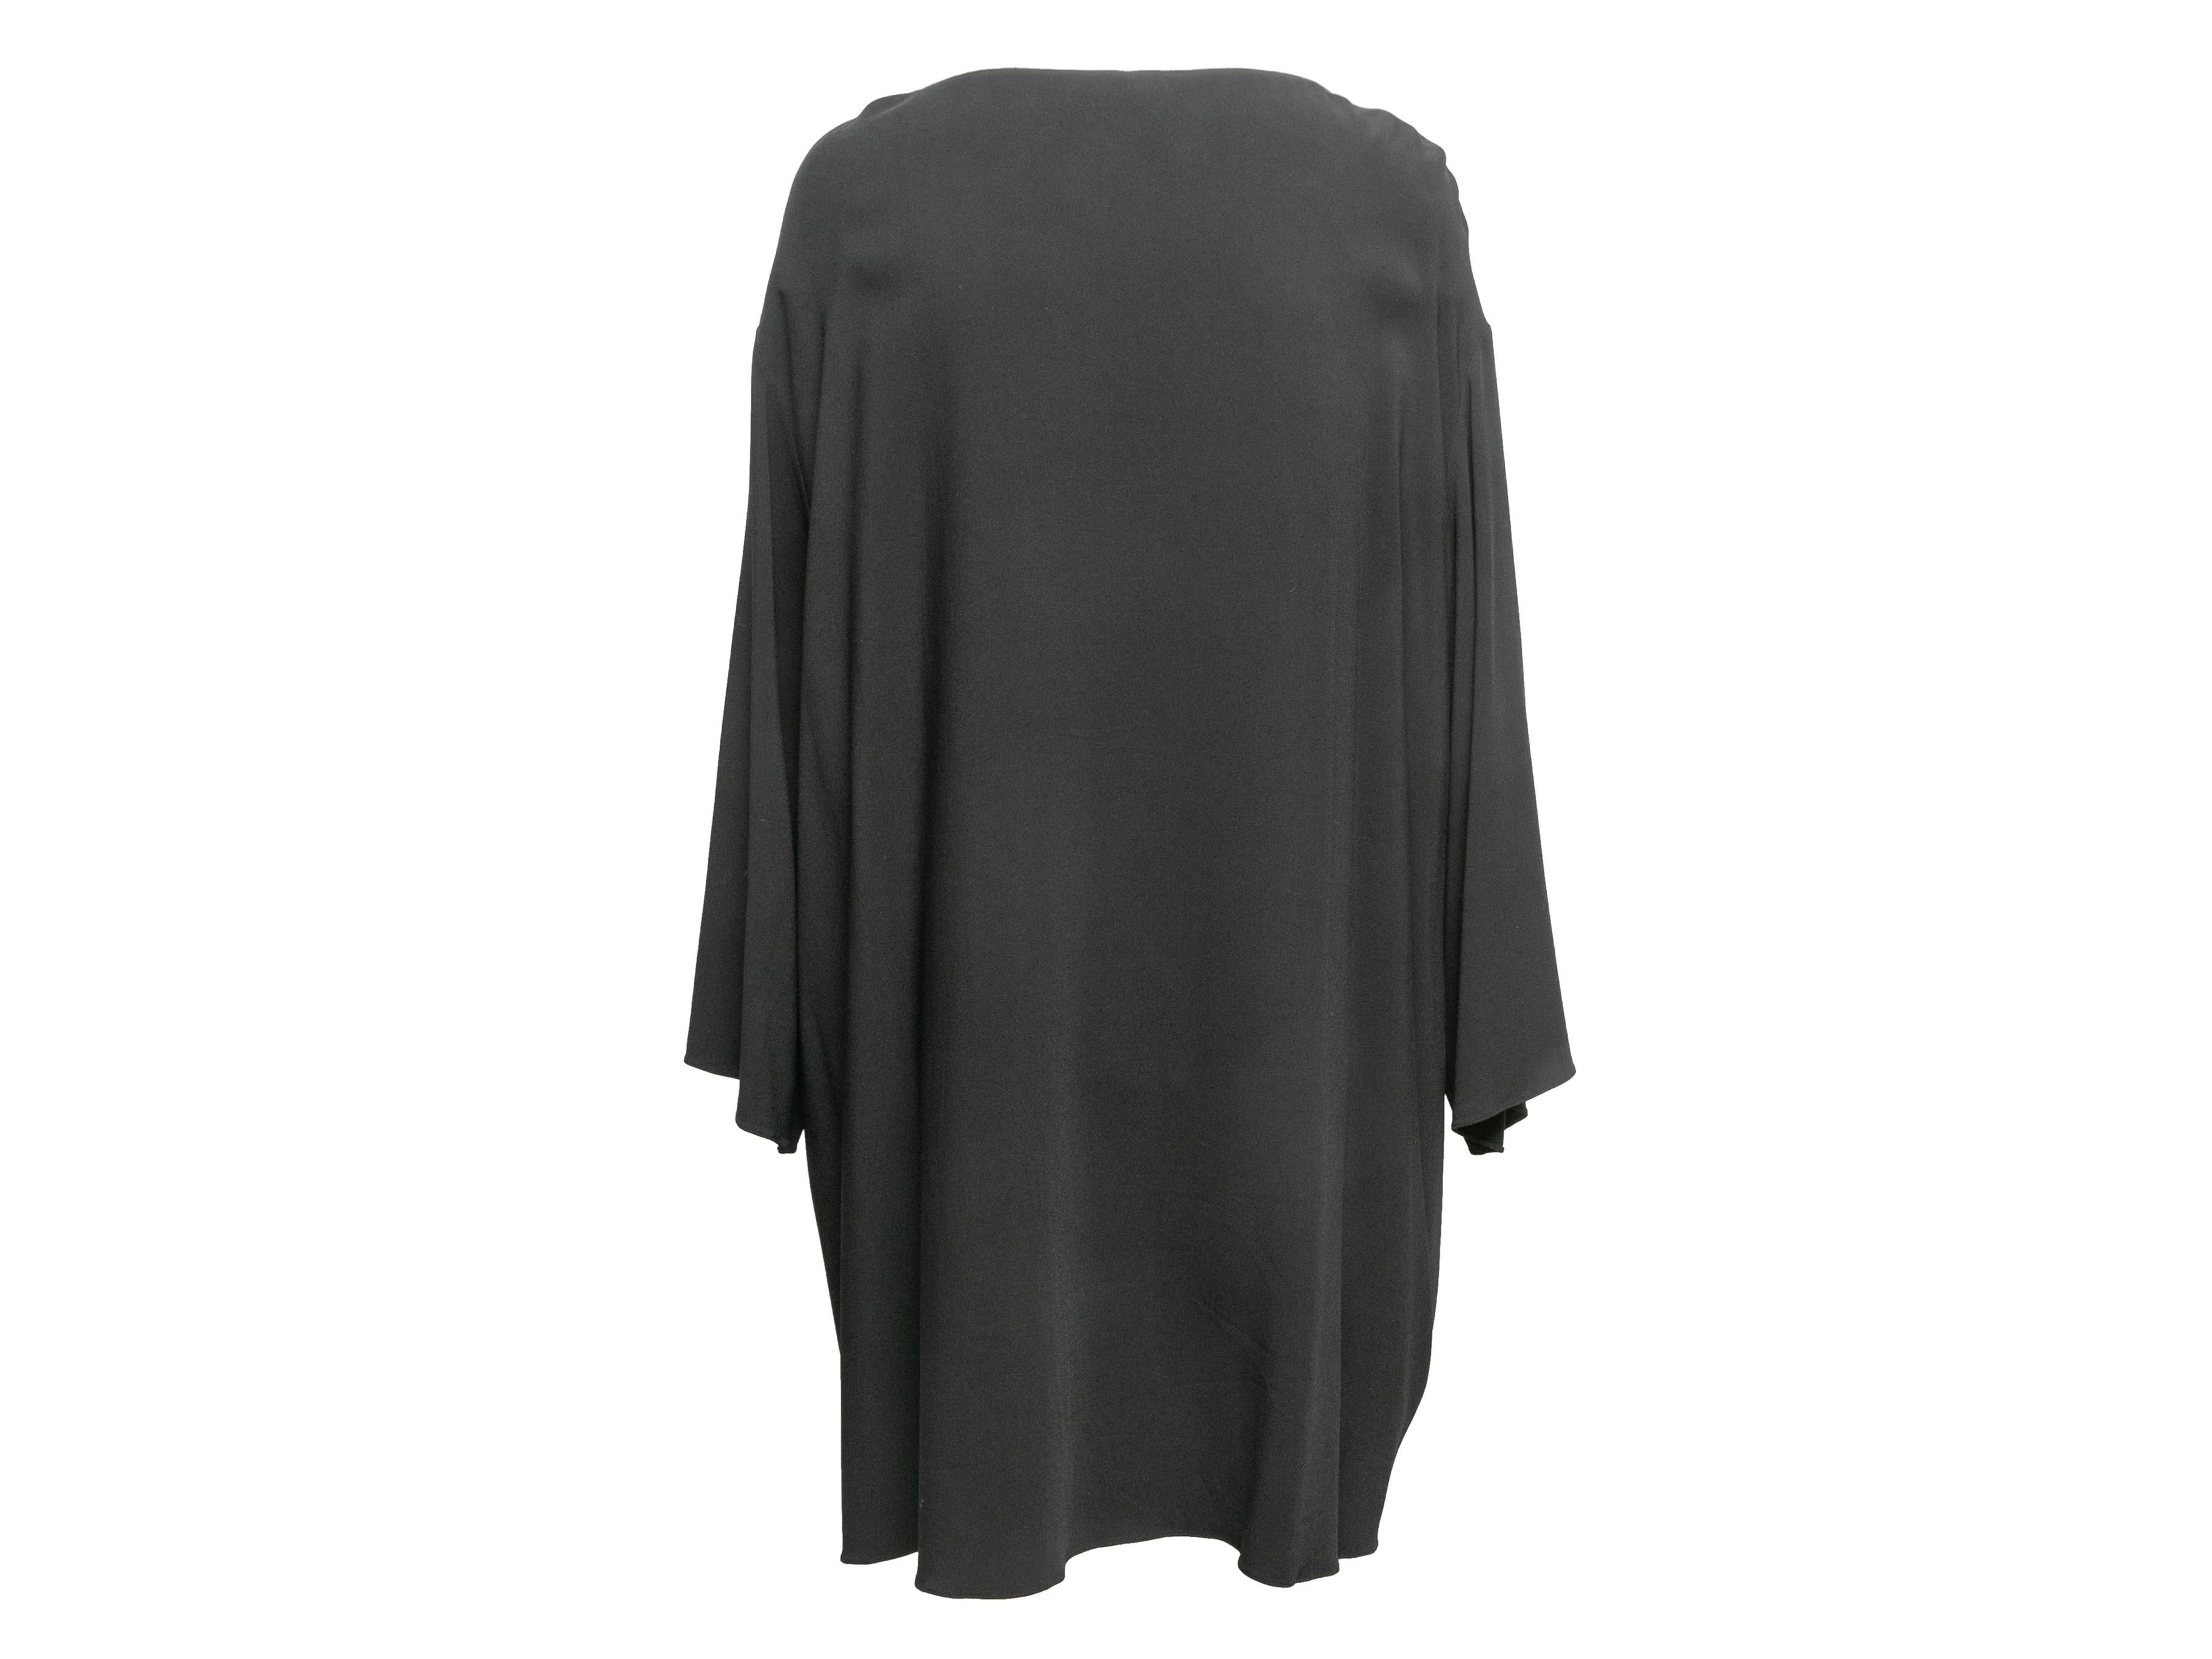 Schwarzes Bateau Neck Pullover Kleid von The Row. Lange Ärmel. 54